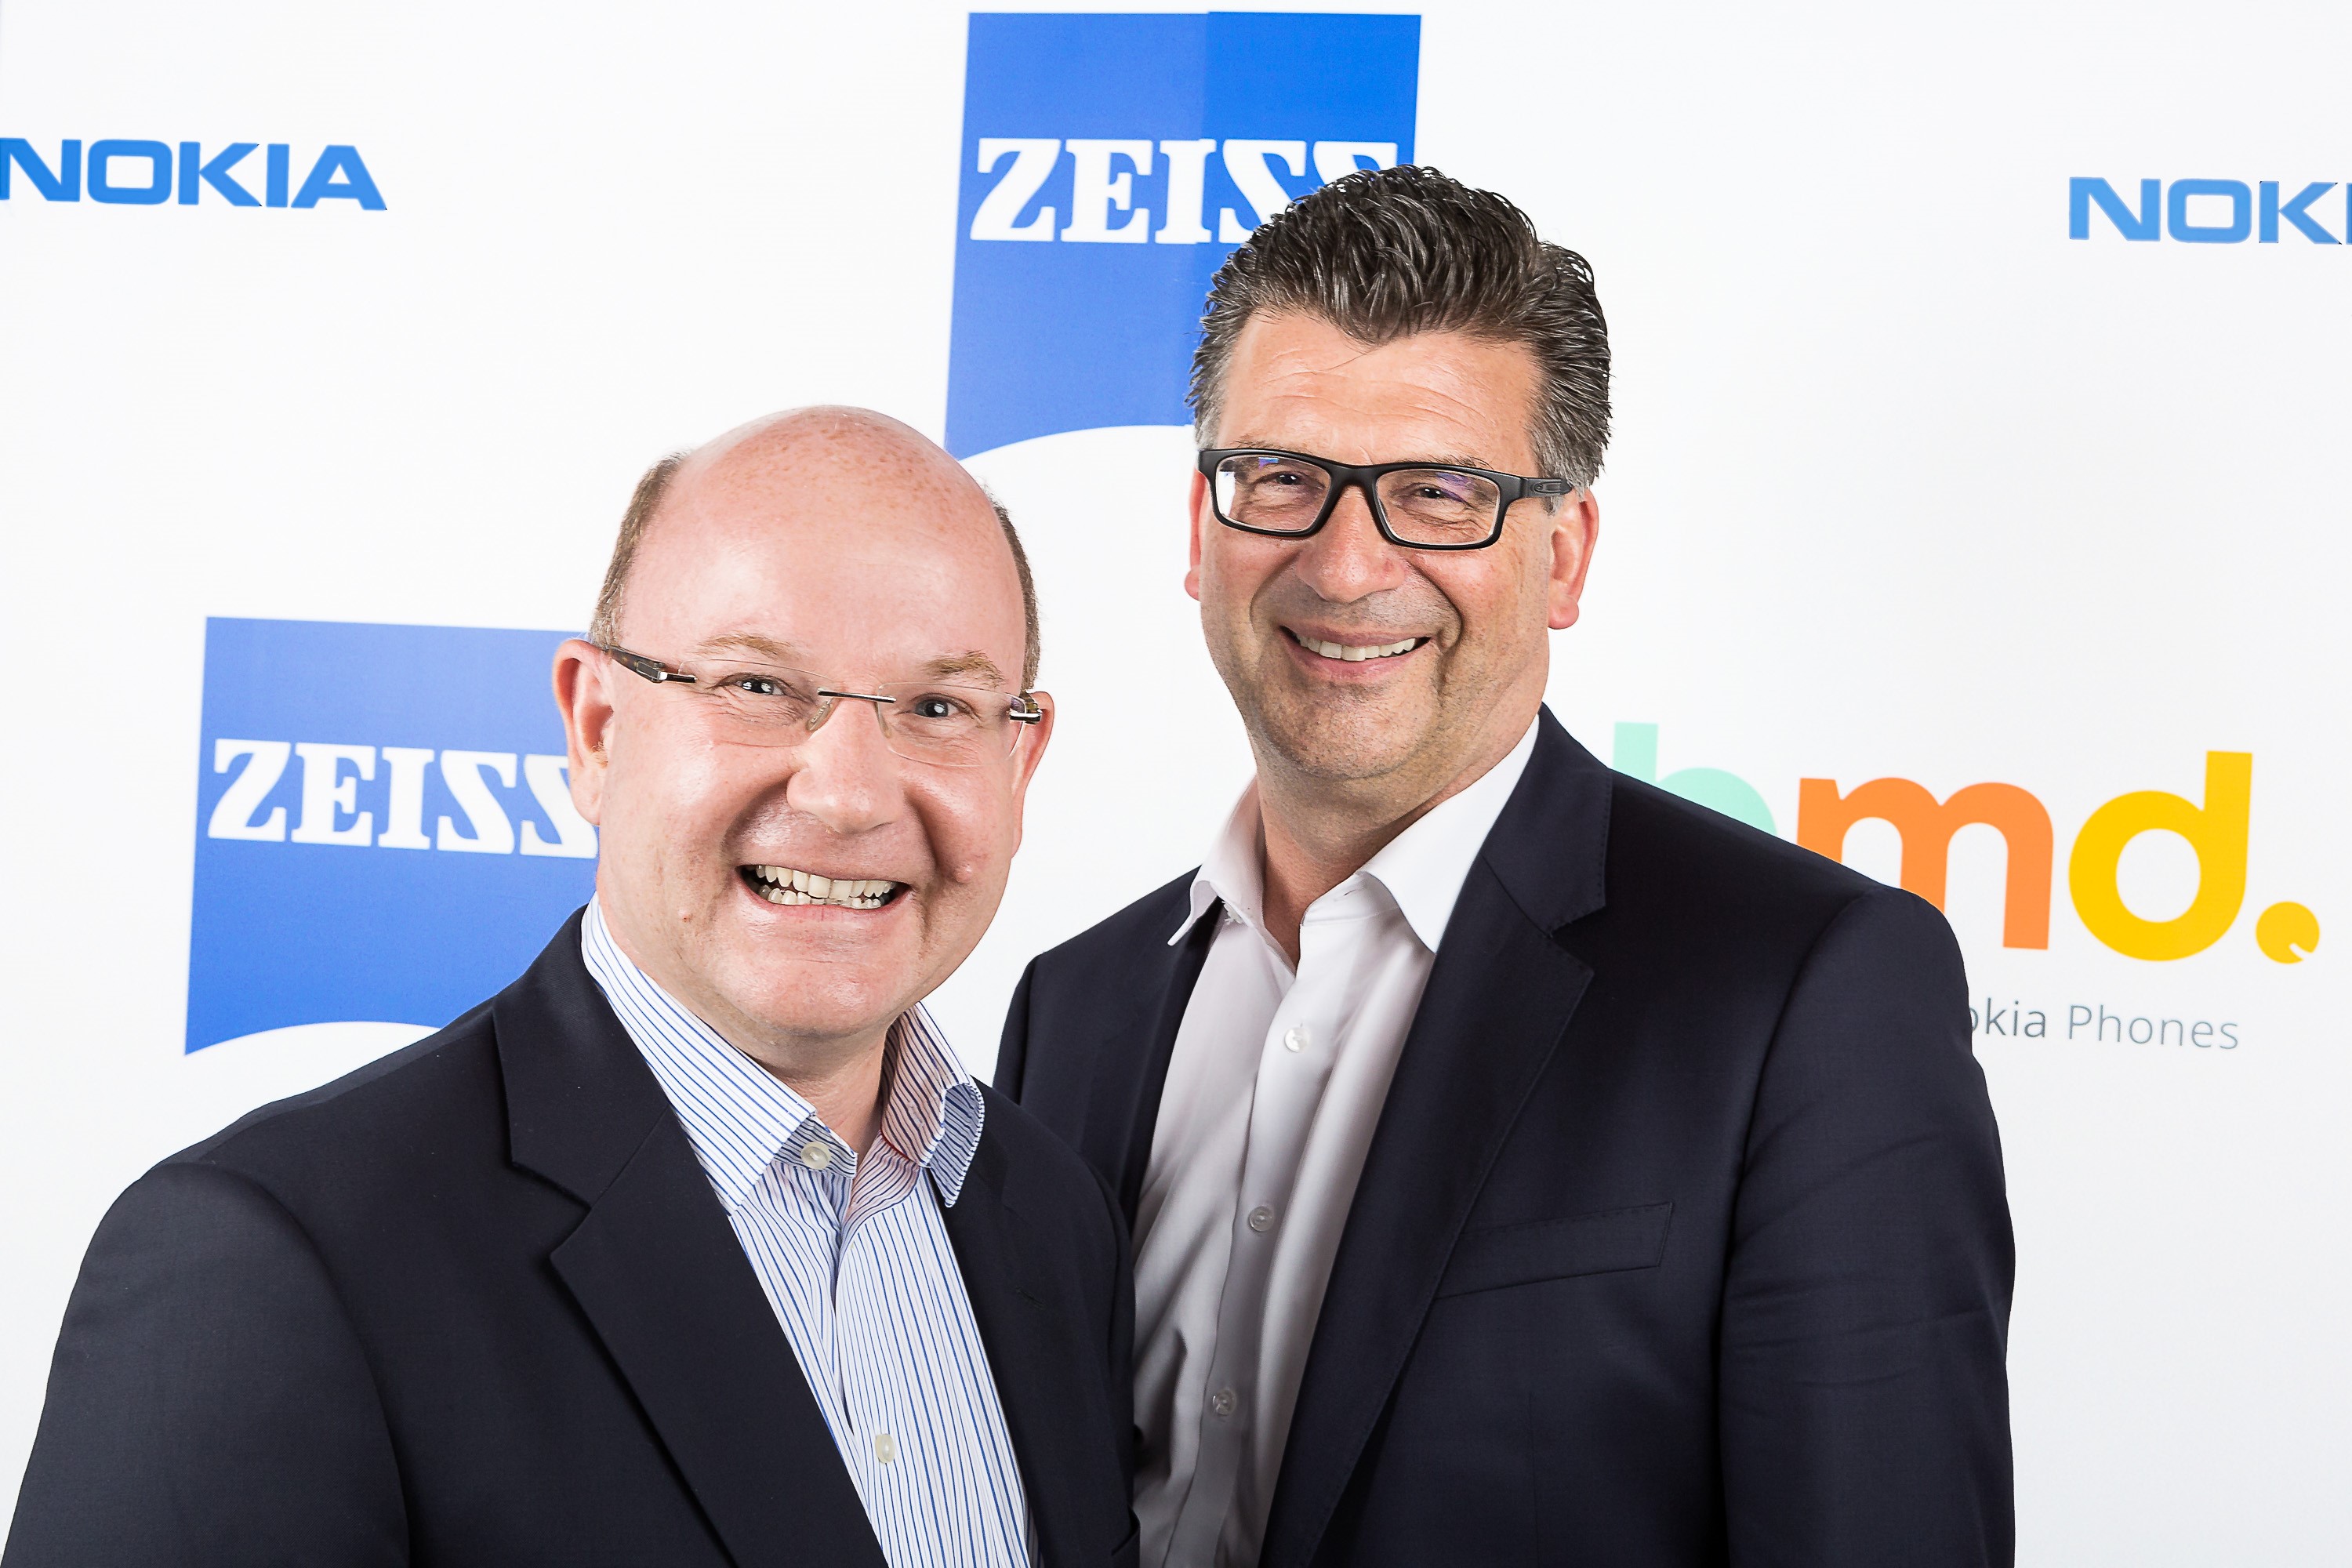 Nokia ve Zeiss ortaklığı geri döndü